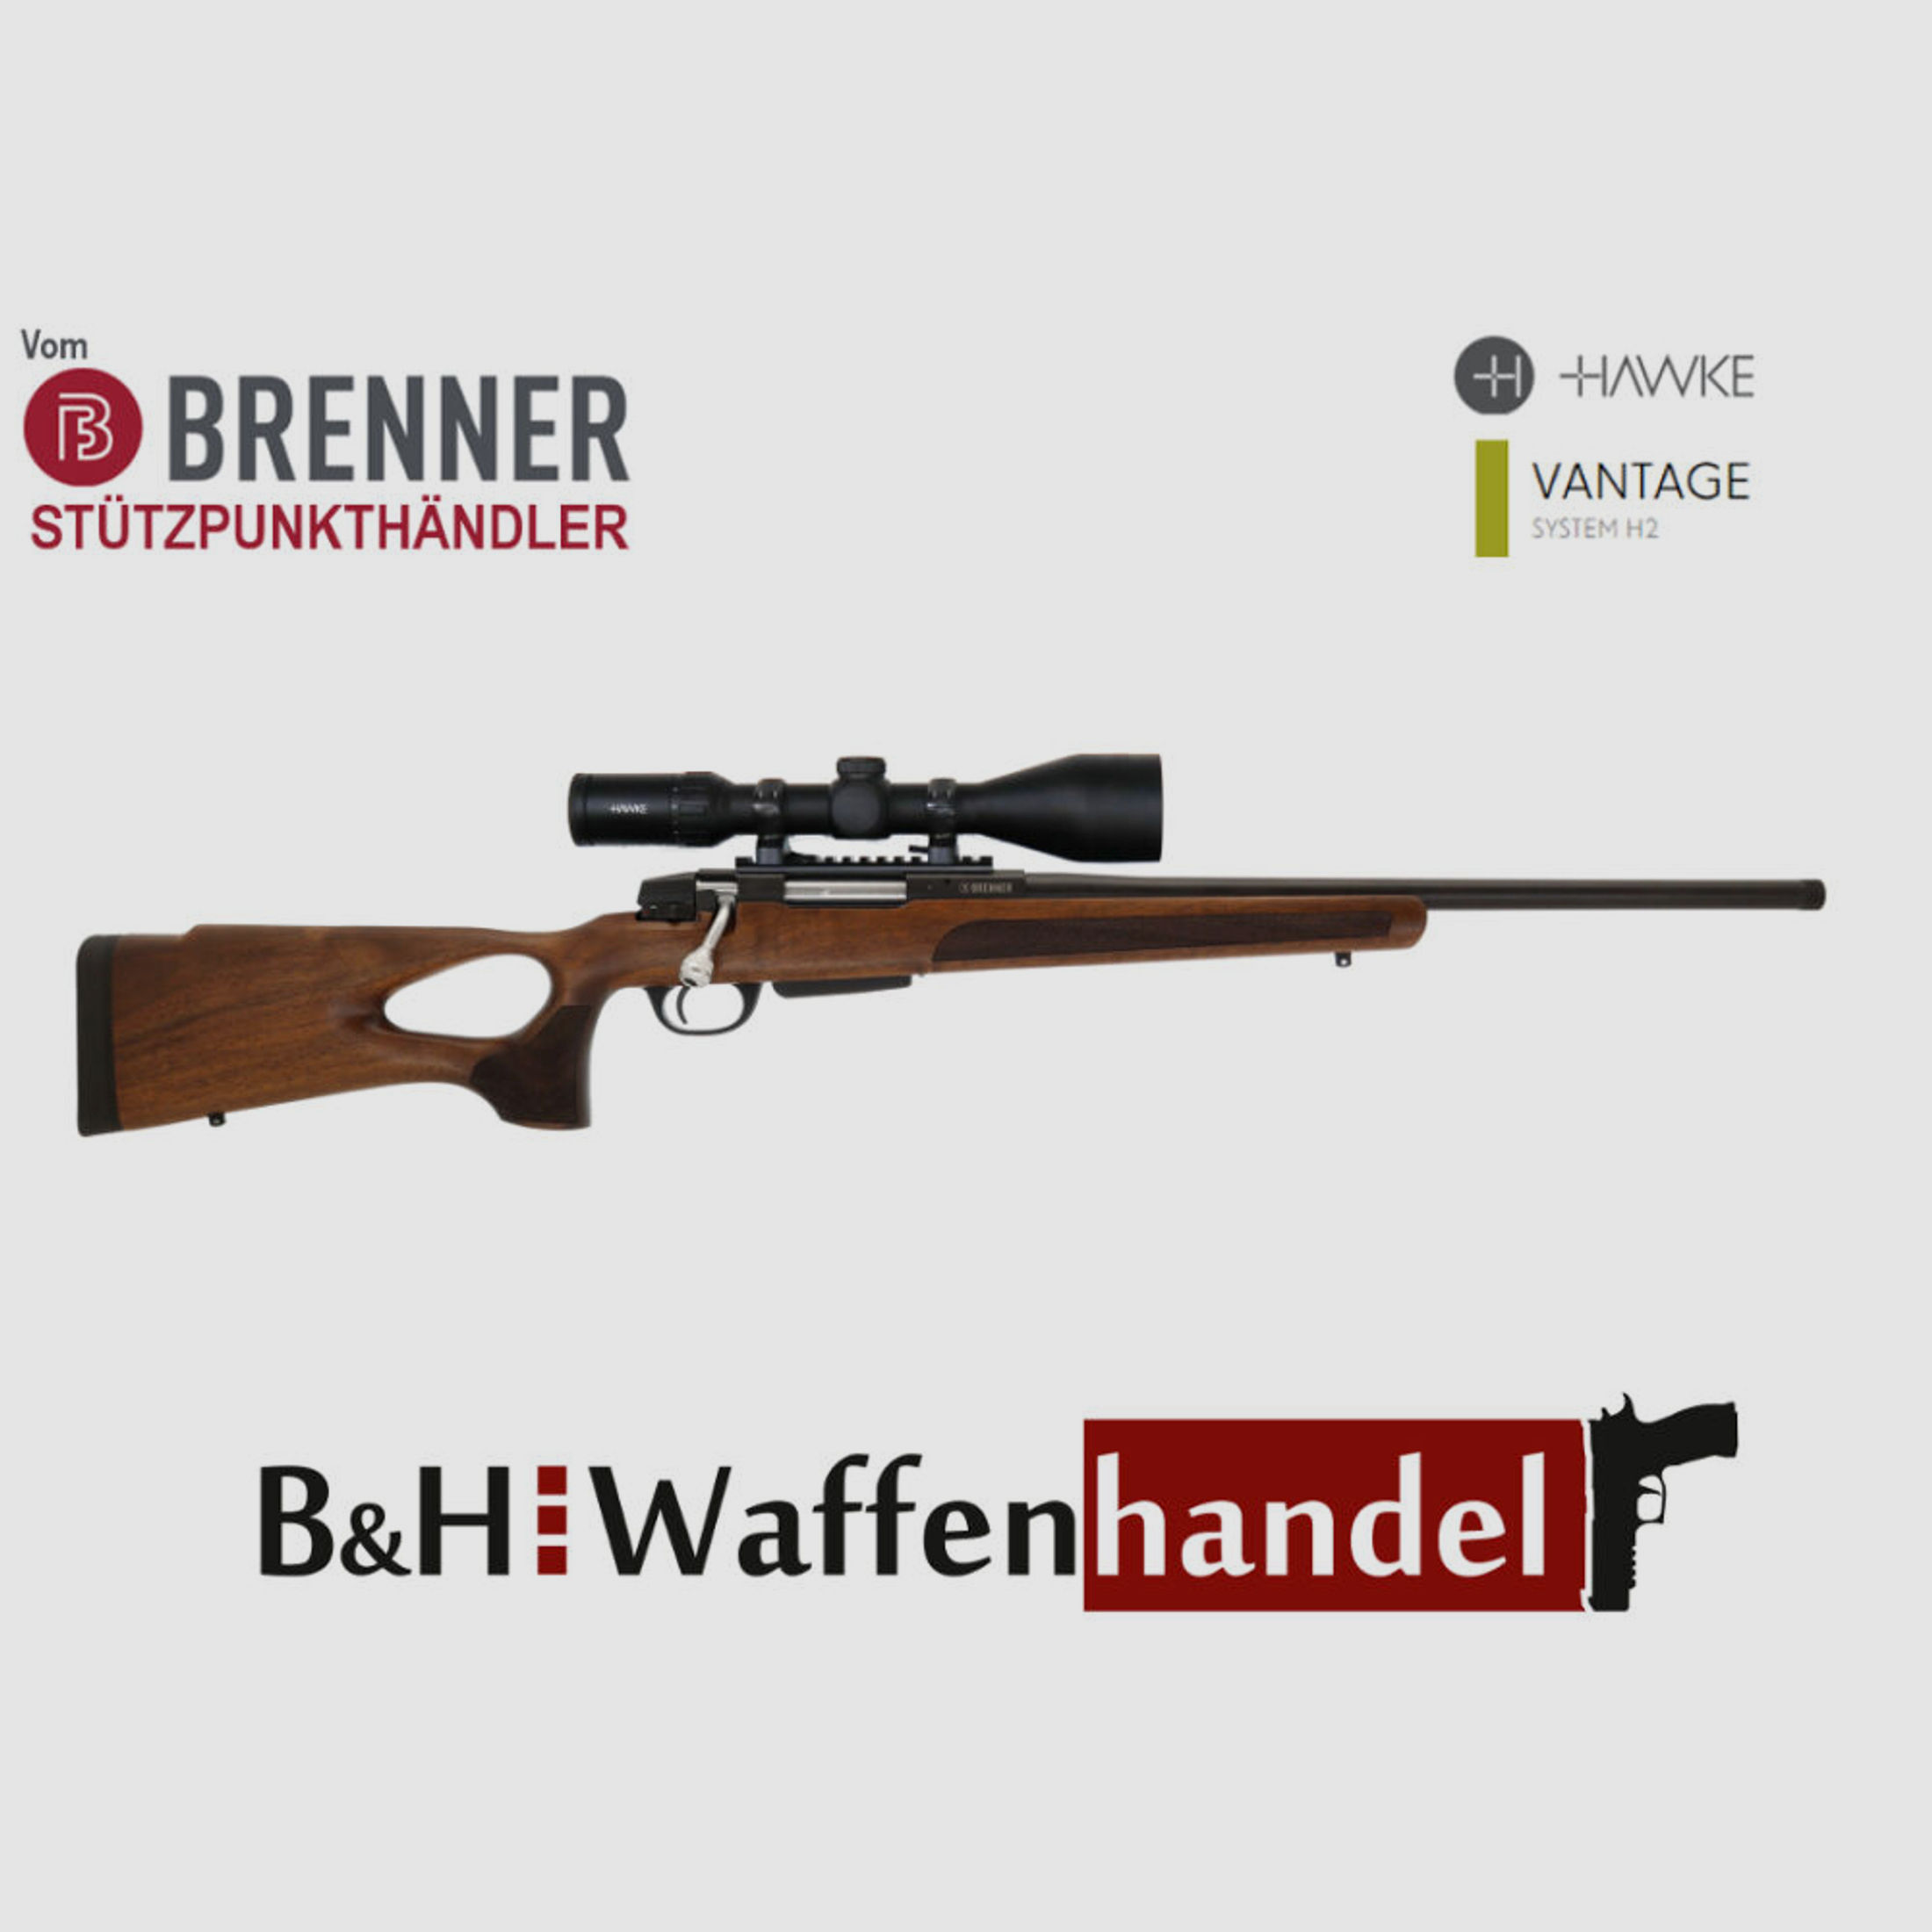 Brenner Komplettpaket:	 Brenner BR 20 Lochschaft mit Hawke Vantage 3-12x56